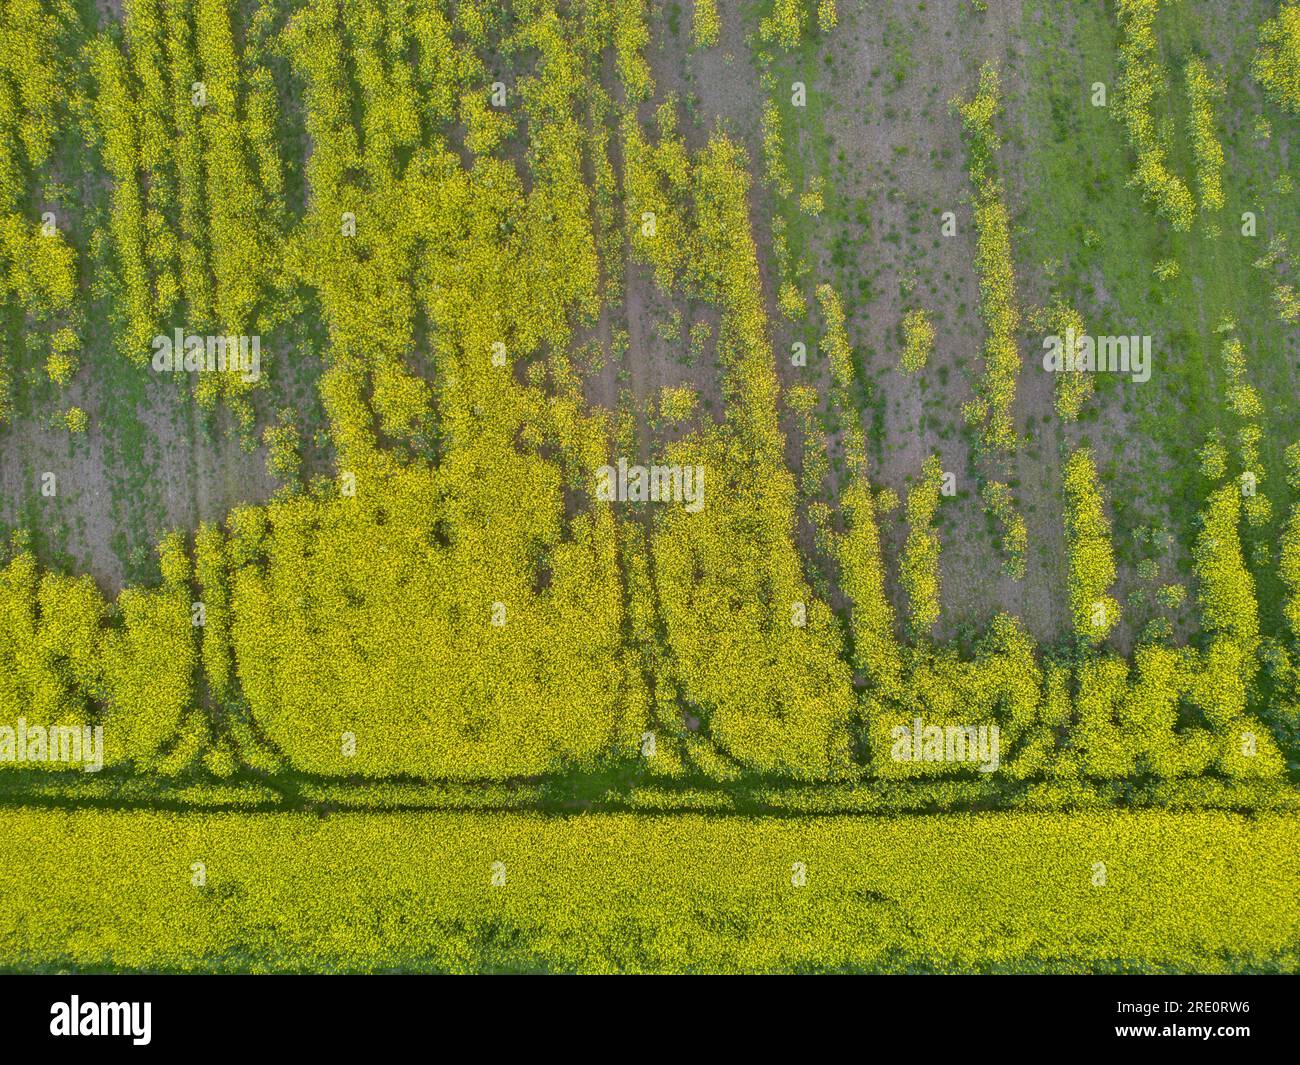 Immagini aeree di terreni agricoli britannici che mostrano i confini del campo e le tracce dei veicoli, South Shropshire, Inghilterra, Regno Unito Foto Stock